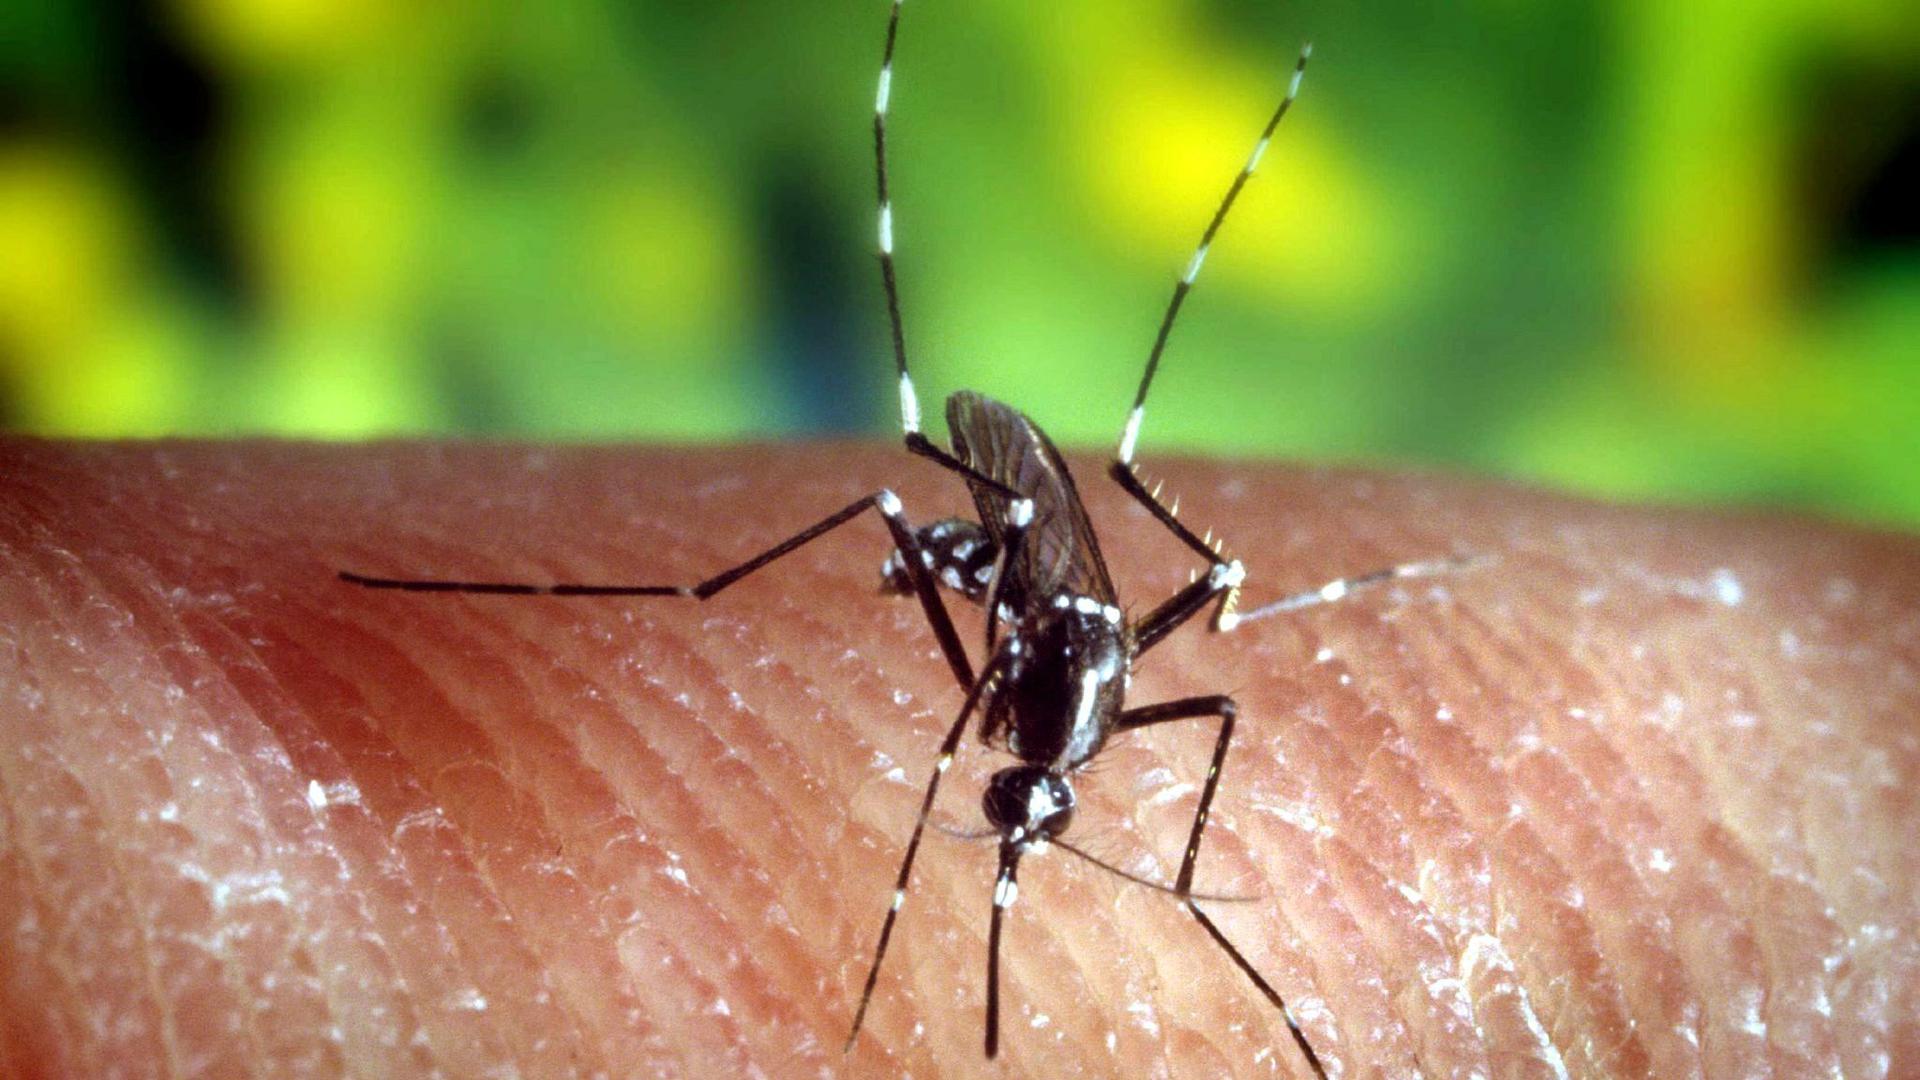 Unter Verdacht: Die Asiatische Tigermücke – sie kommt auch in Westafrika vor – gilt als mögliche Verbreiterin von Krankheiten wie dem Dengue-Fieber.